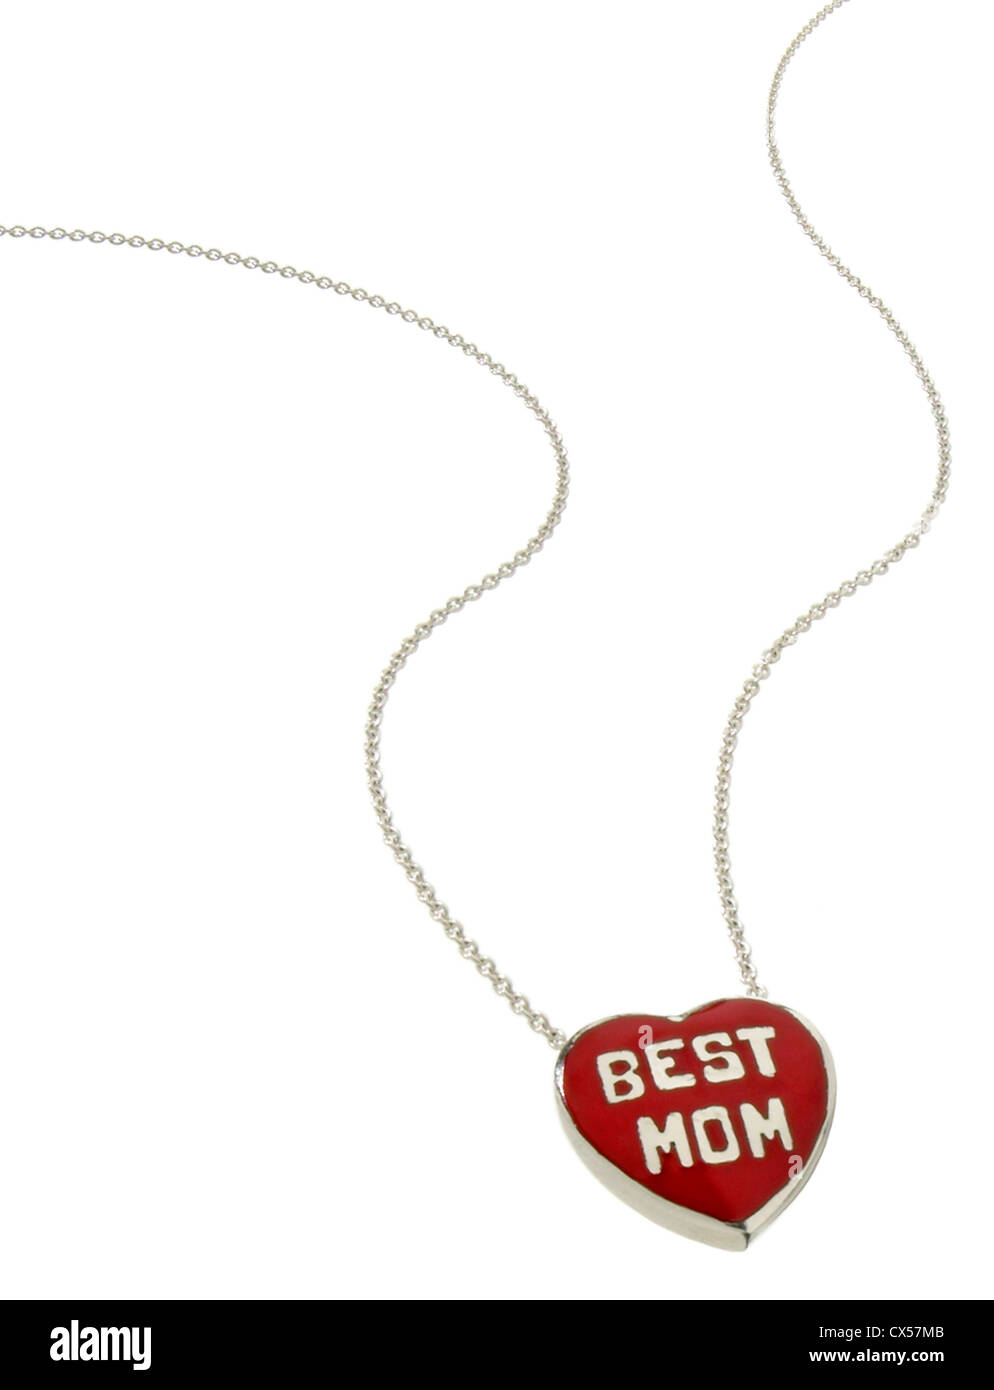 Best mom cuore rosso collana fotografato su sfondo bianco Foto Stock